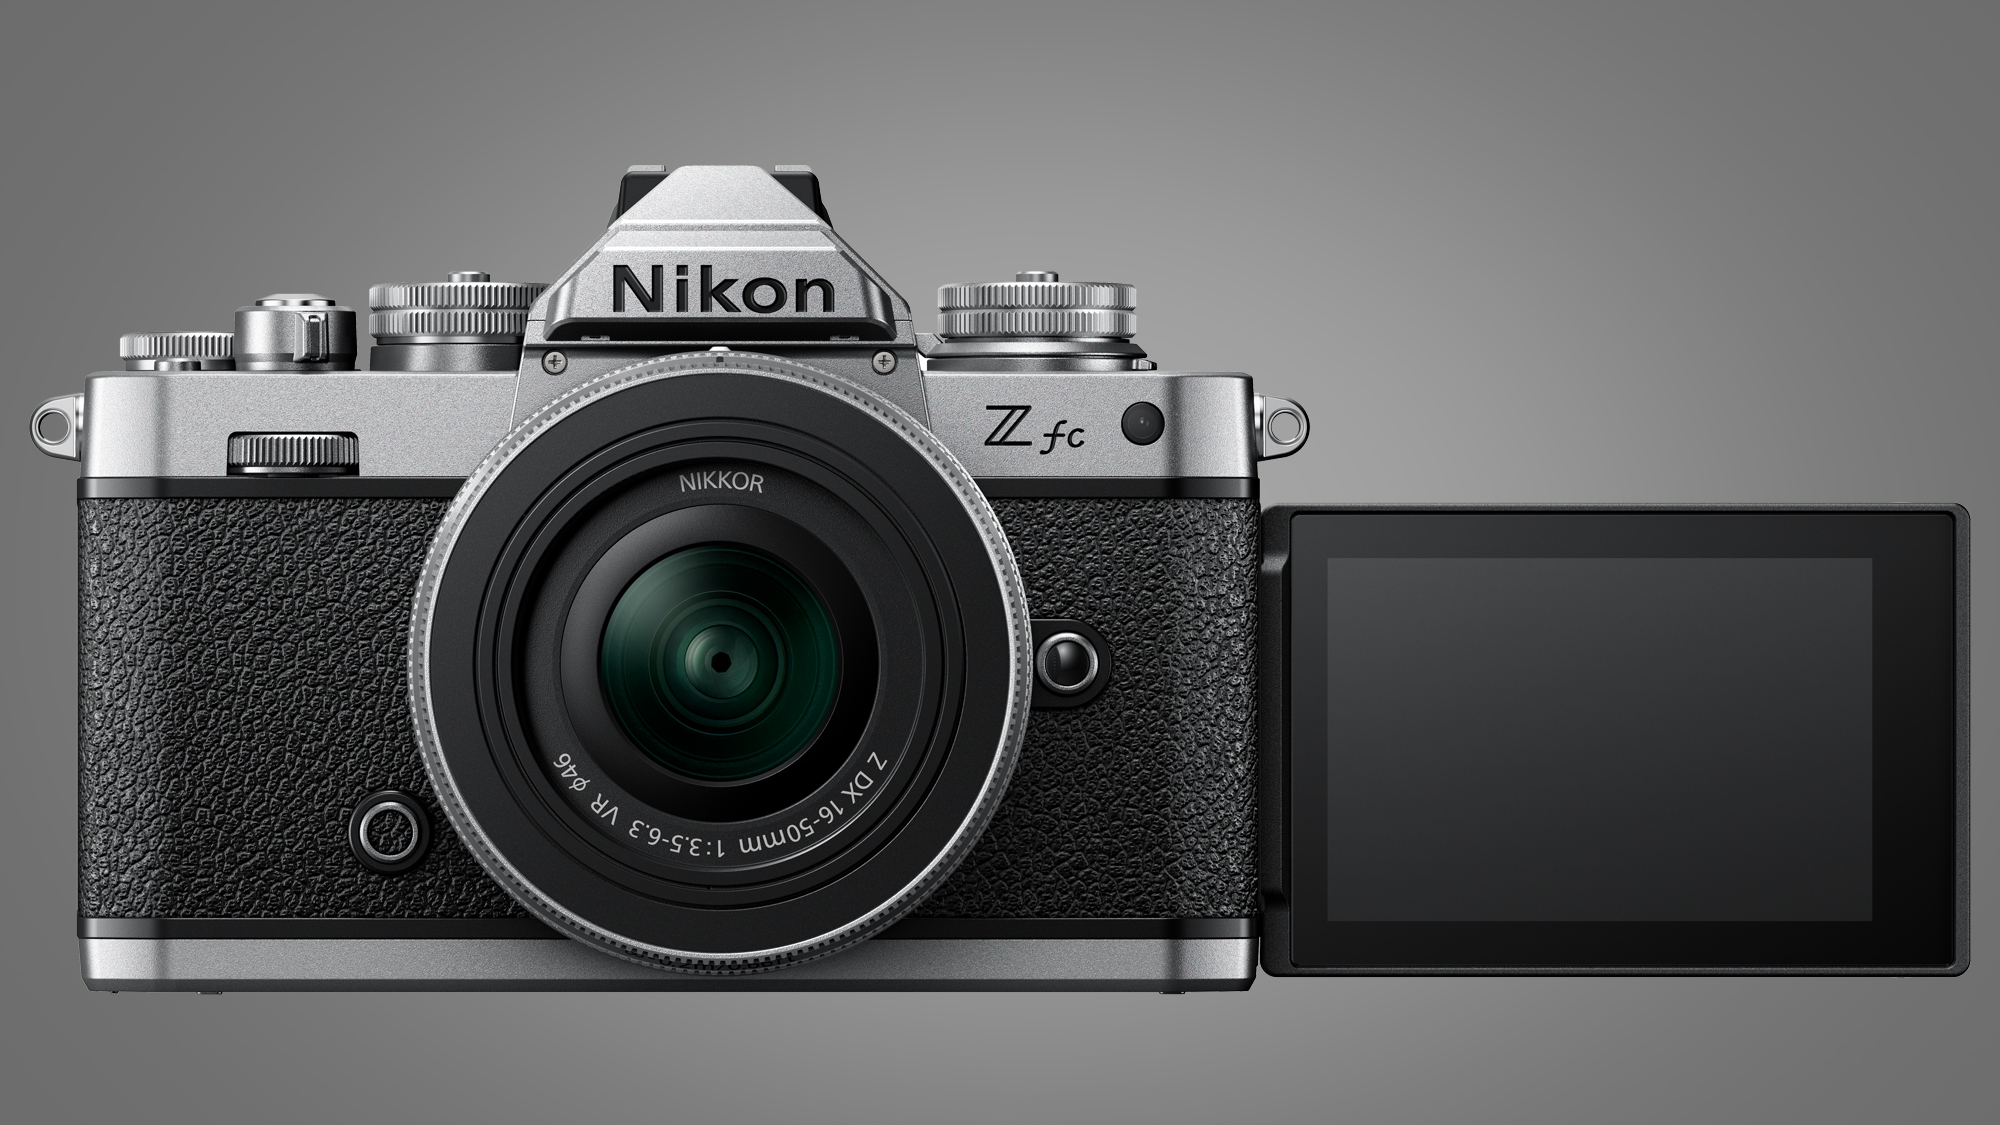 Image of the Nikon Zfc